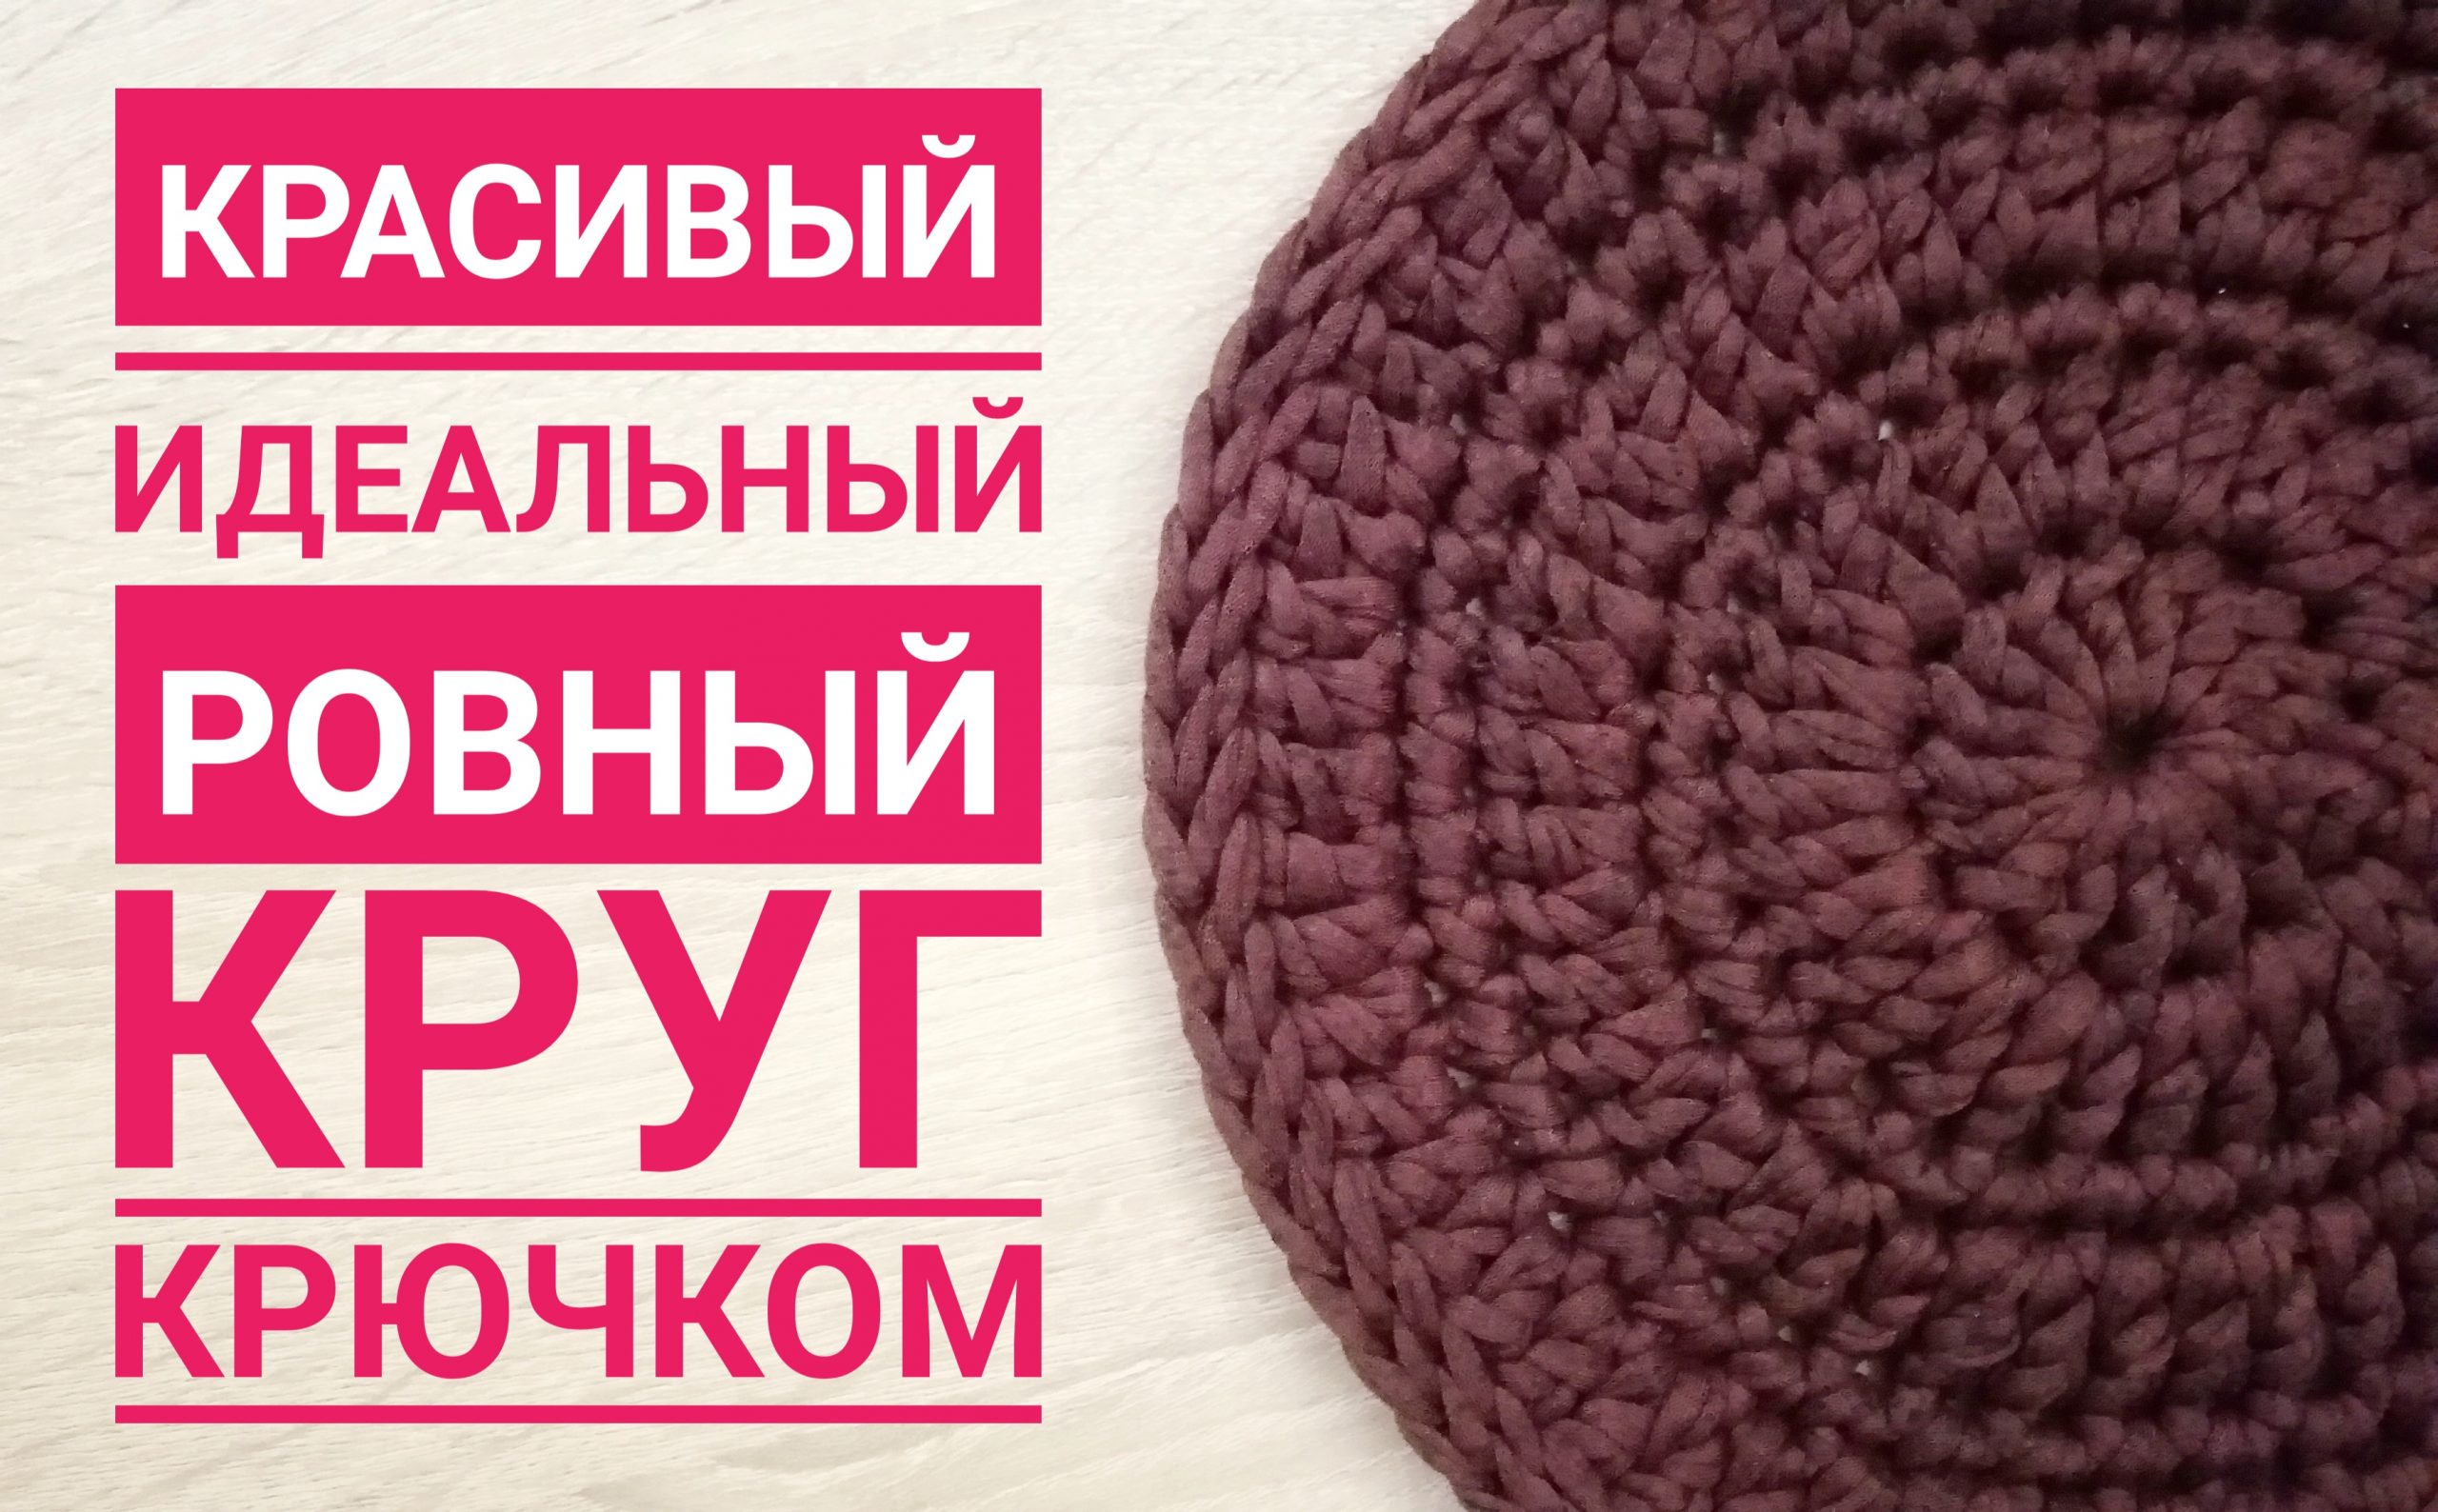 Красивый идеальный ровный круг крючком/ Beautiful crochet circle.